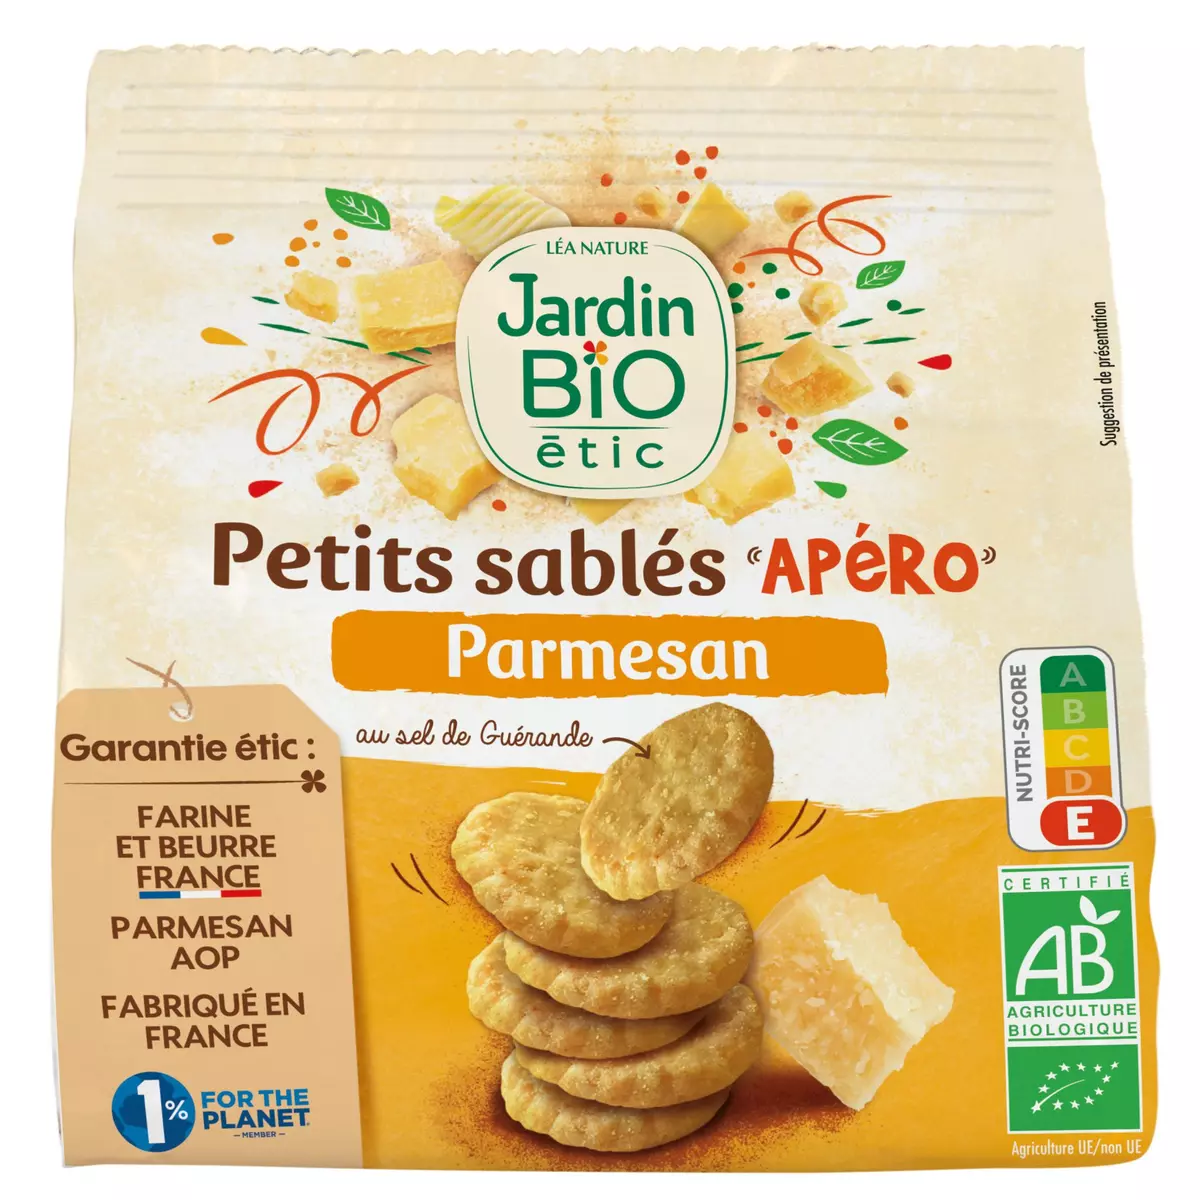 JARDIN BIO ETIC Petits sablés Apéro parmesan au sel de Guérande 100g